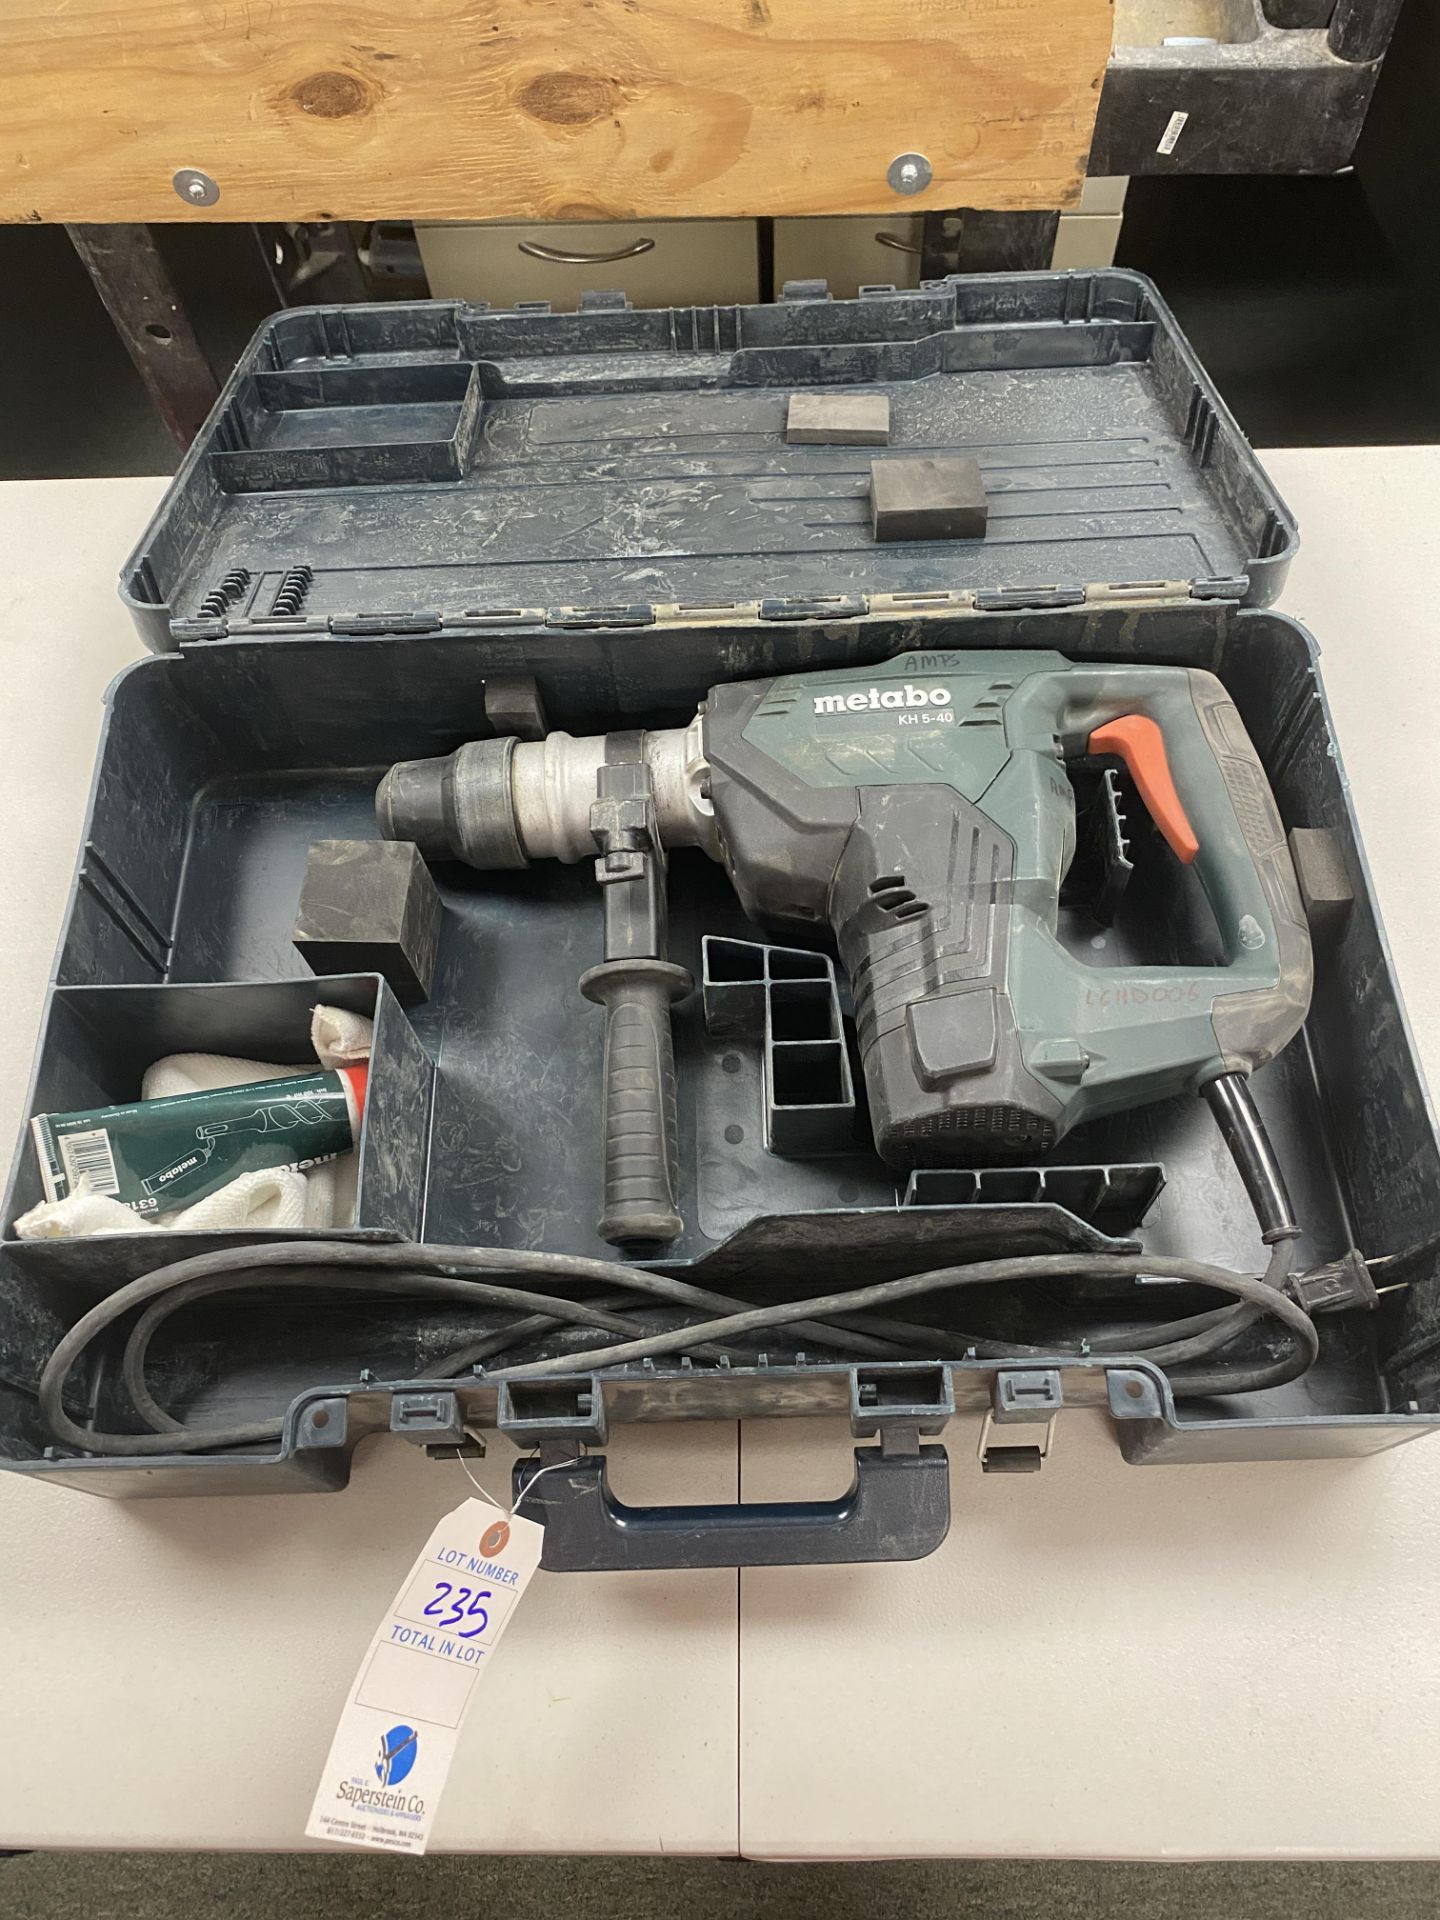 Metabo Model #KH5-40 Corded Hammer Drill w/ Case